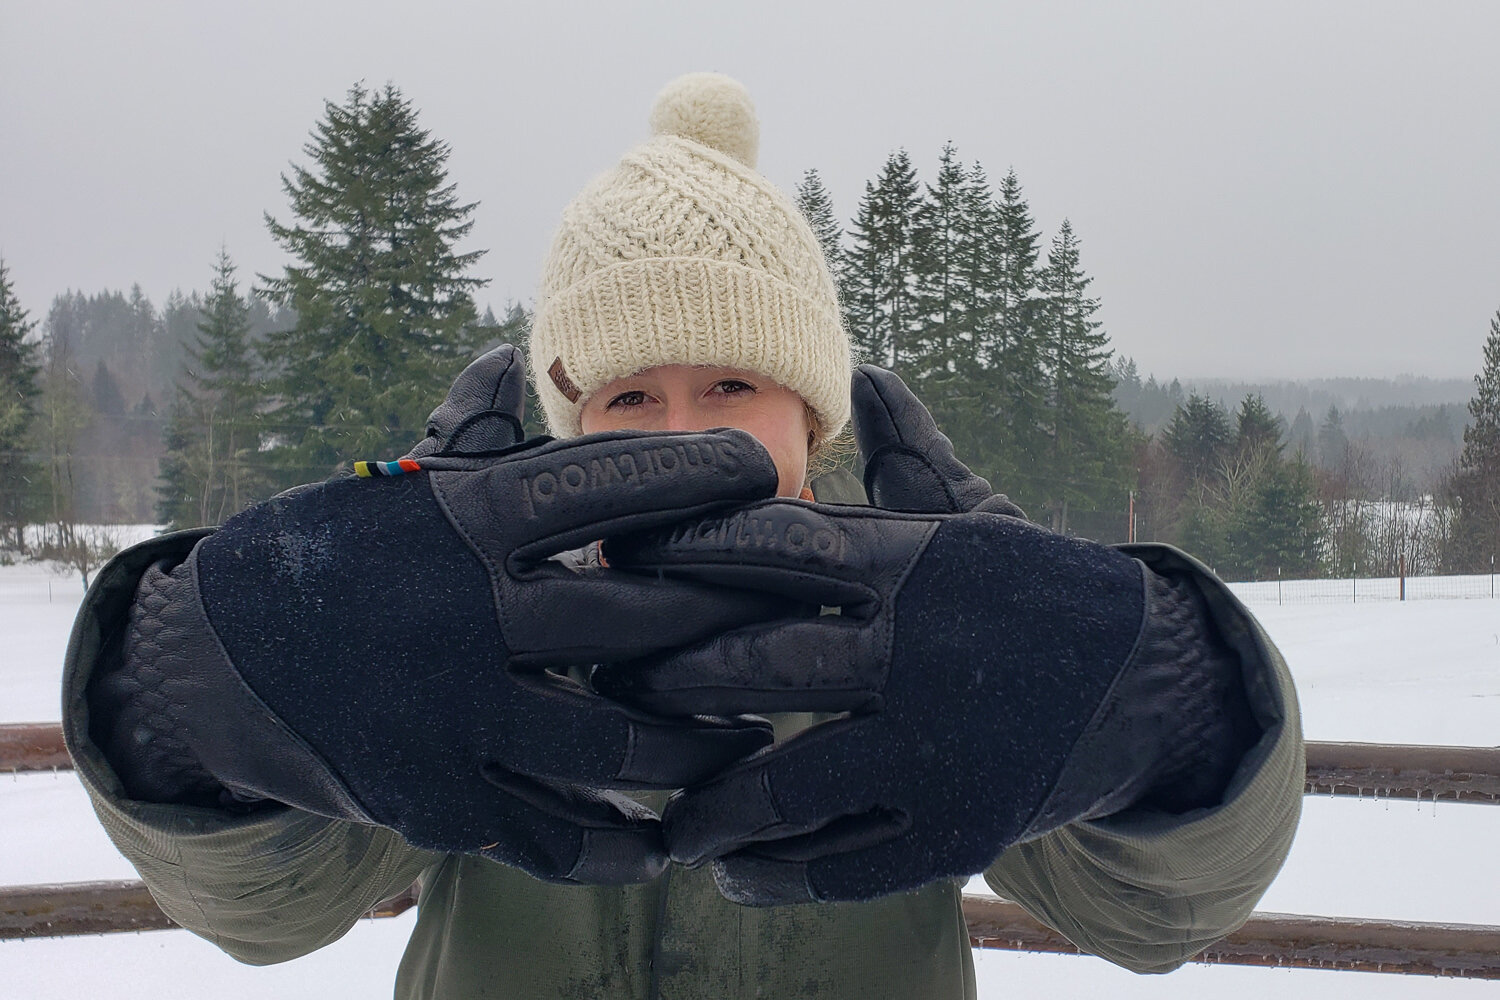 treebark winter insulated mittens thinsulate hollofil 